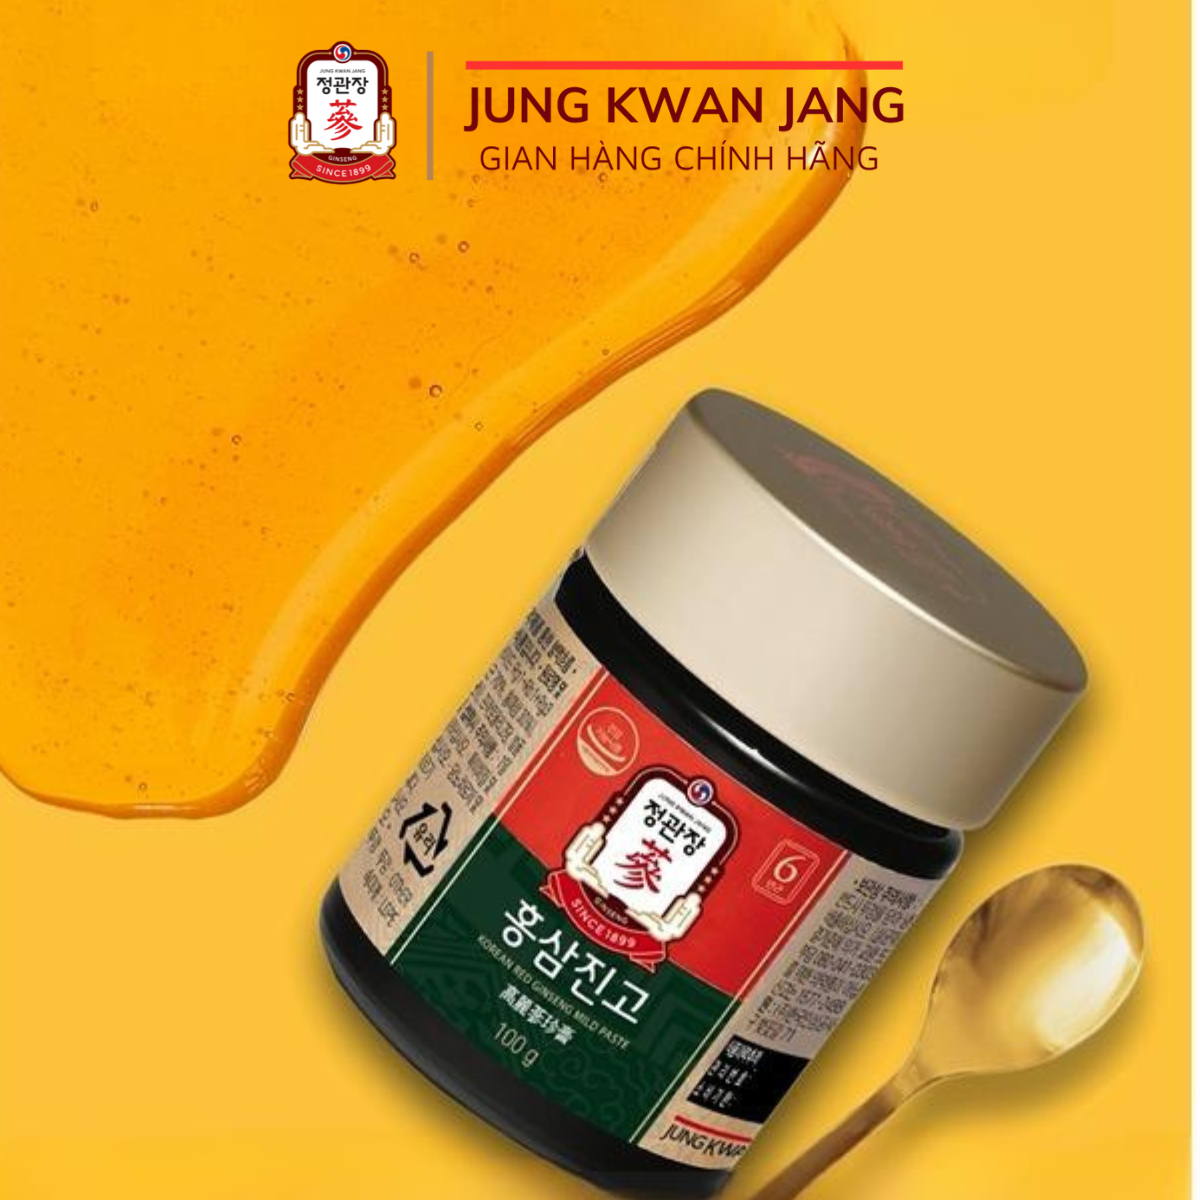 Tinh Chất Hồng Sâm Mật Ong KGC Honey Paste 100g